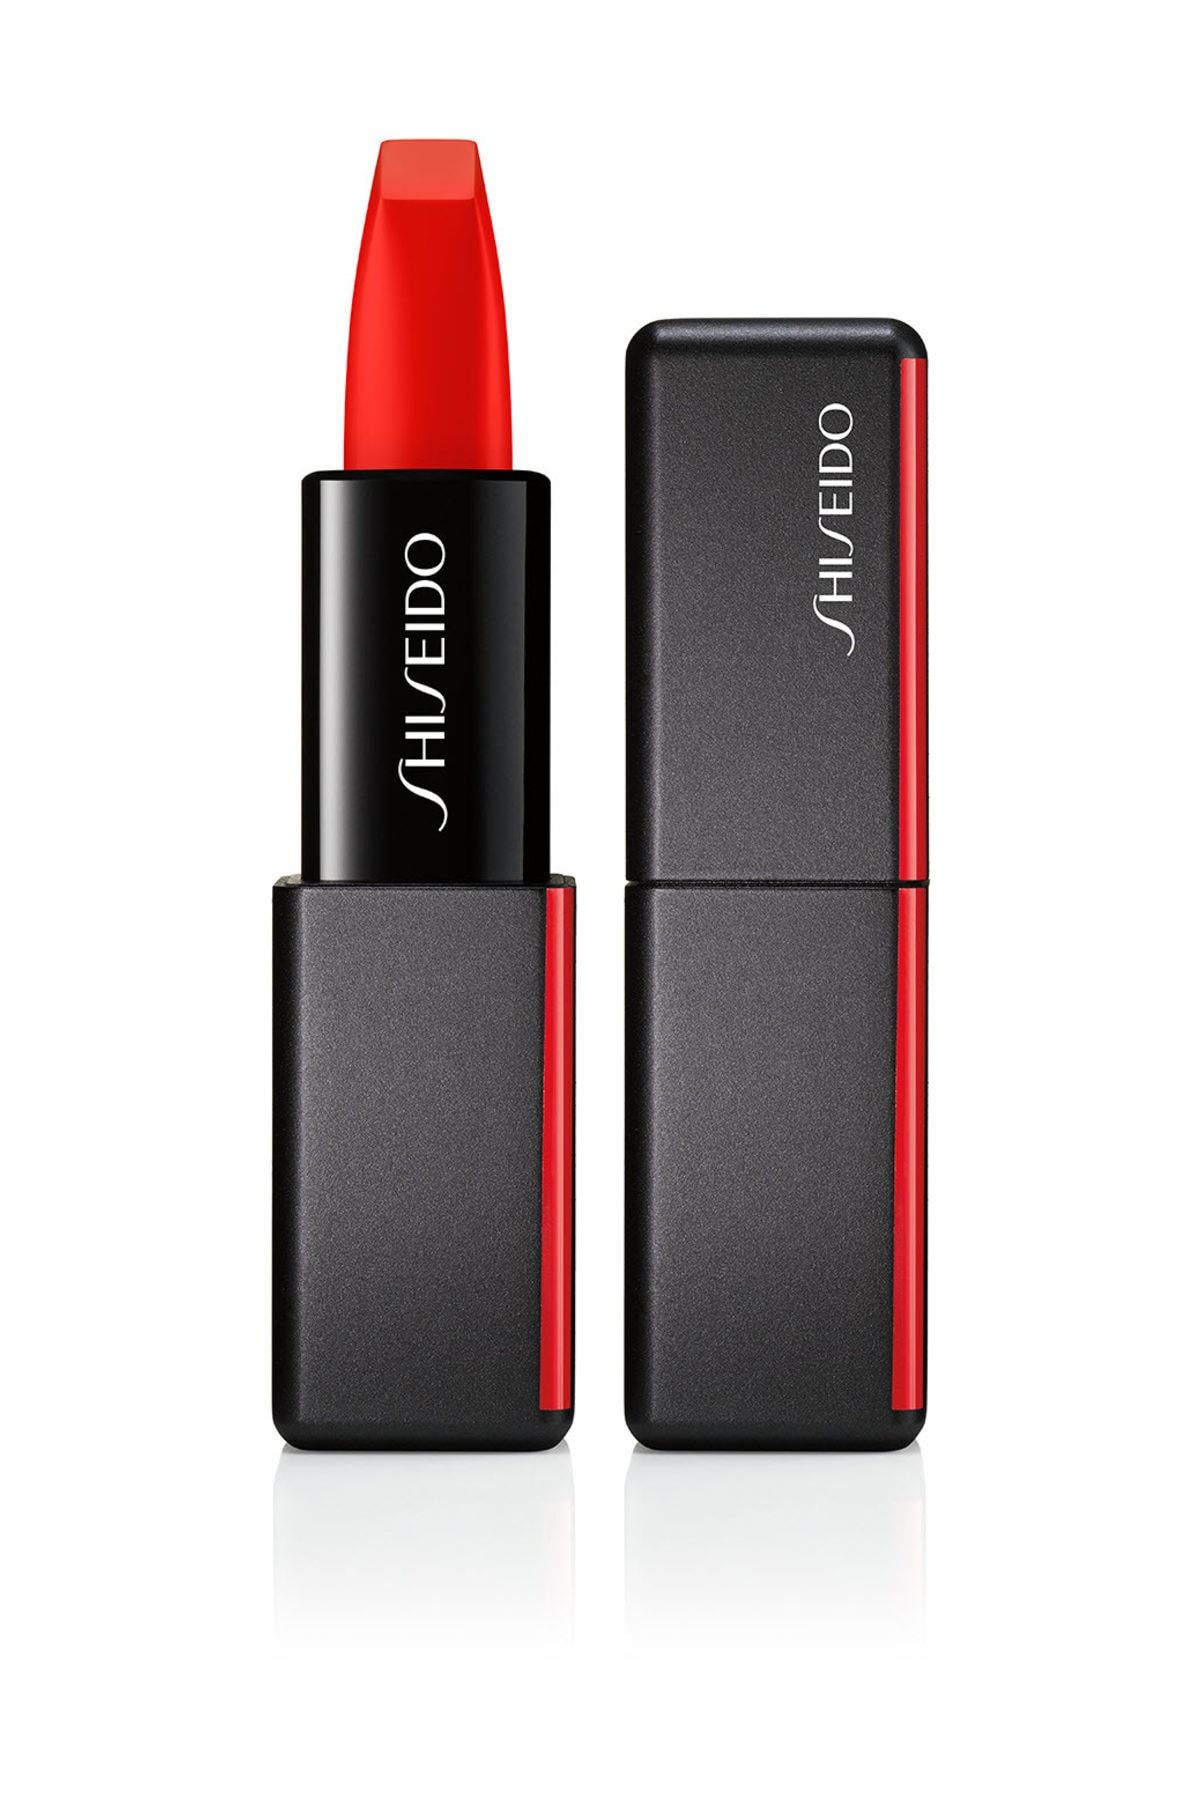 Shiseido Kalıcı Kadifemsi Mat Ruj - SMK Modernmatte Pw Lipstick 509 729238147850